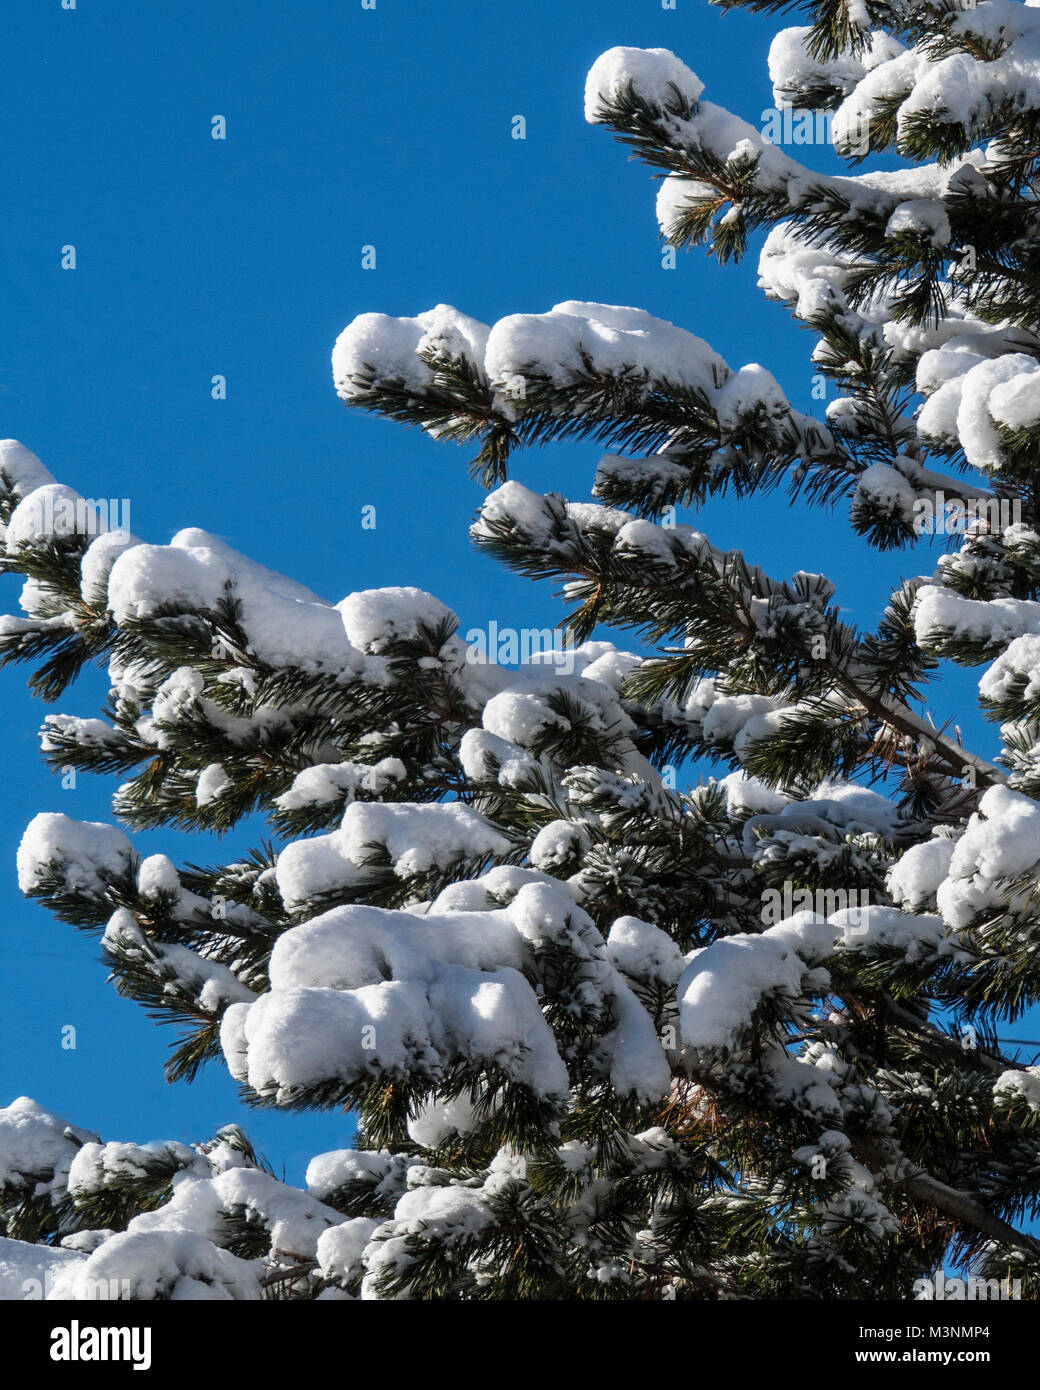 Tanne mit Schnee auf Branchen und blauem Hintergrund Stockfoto